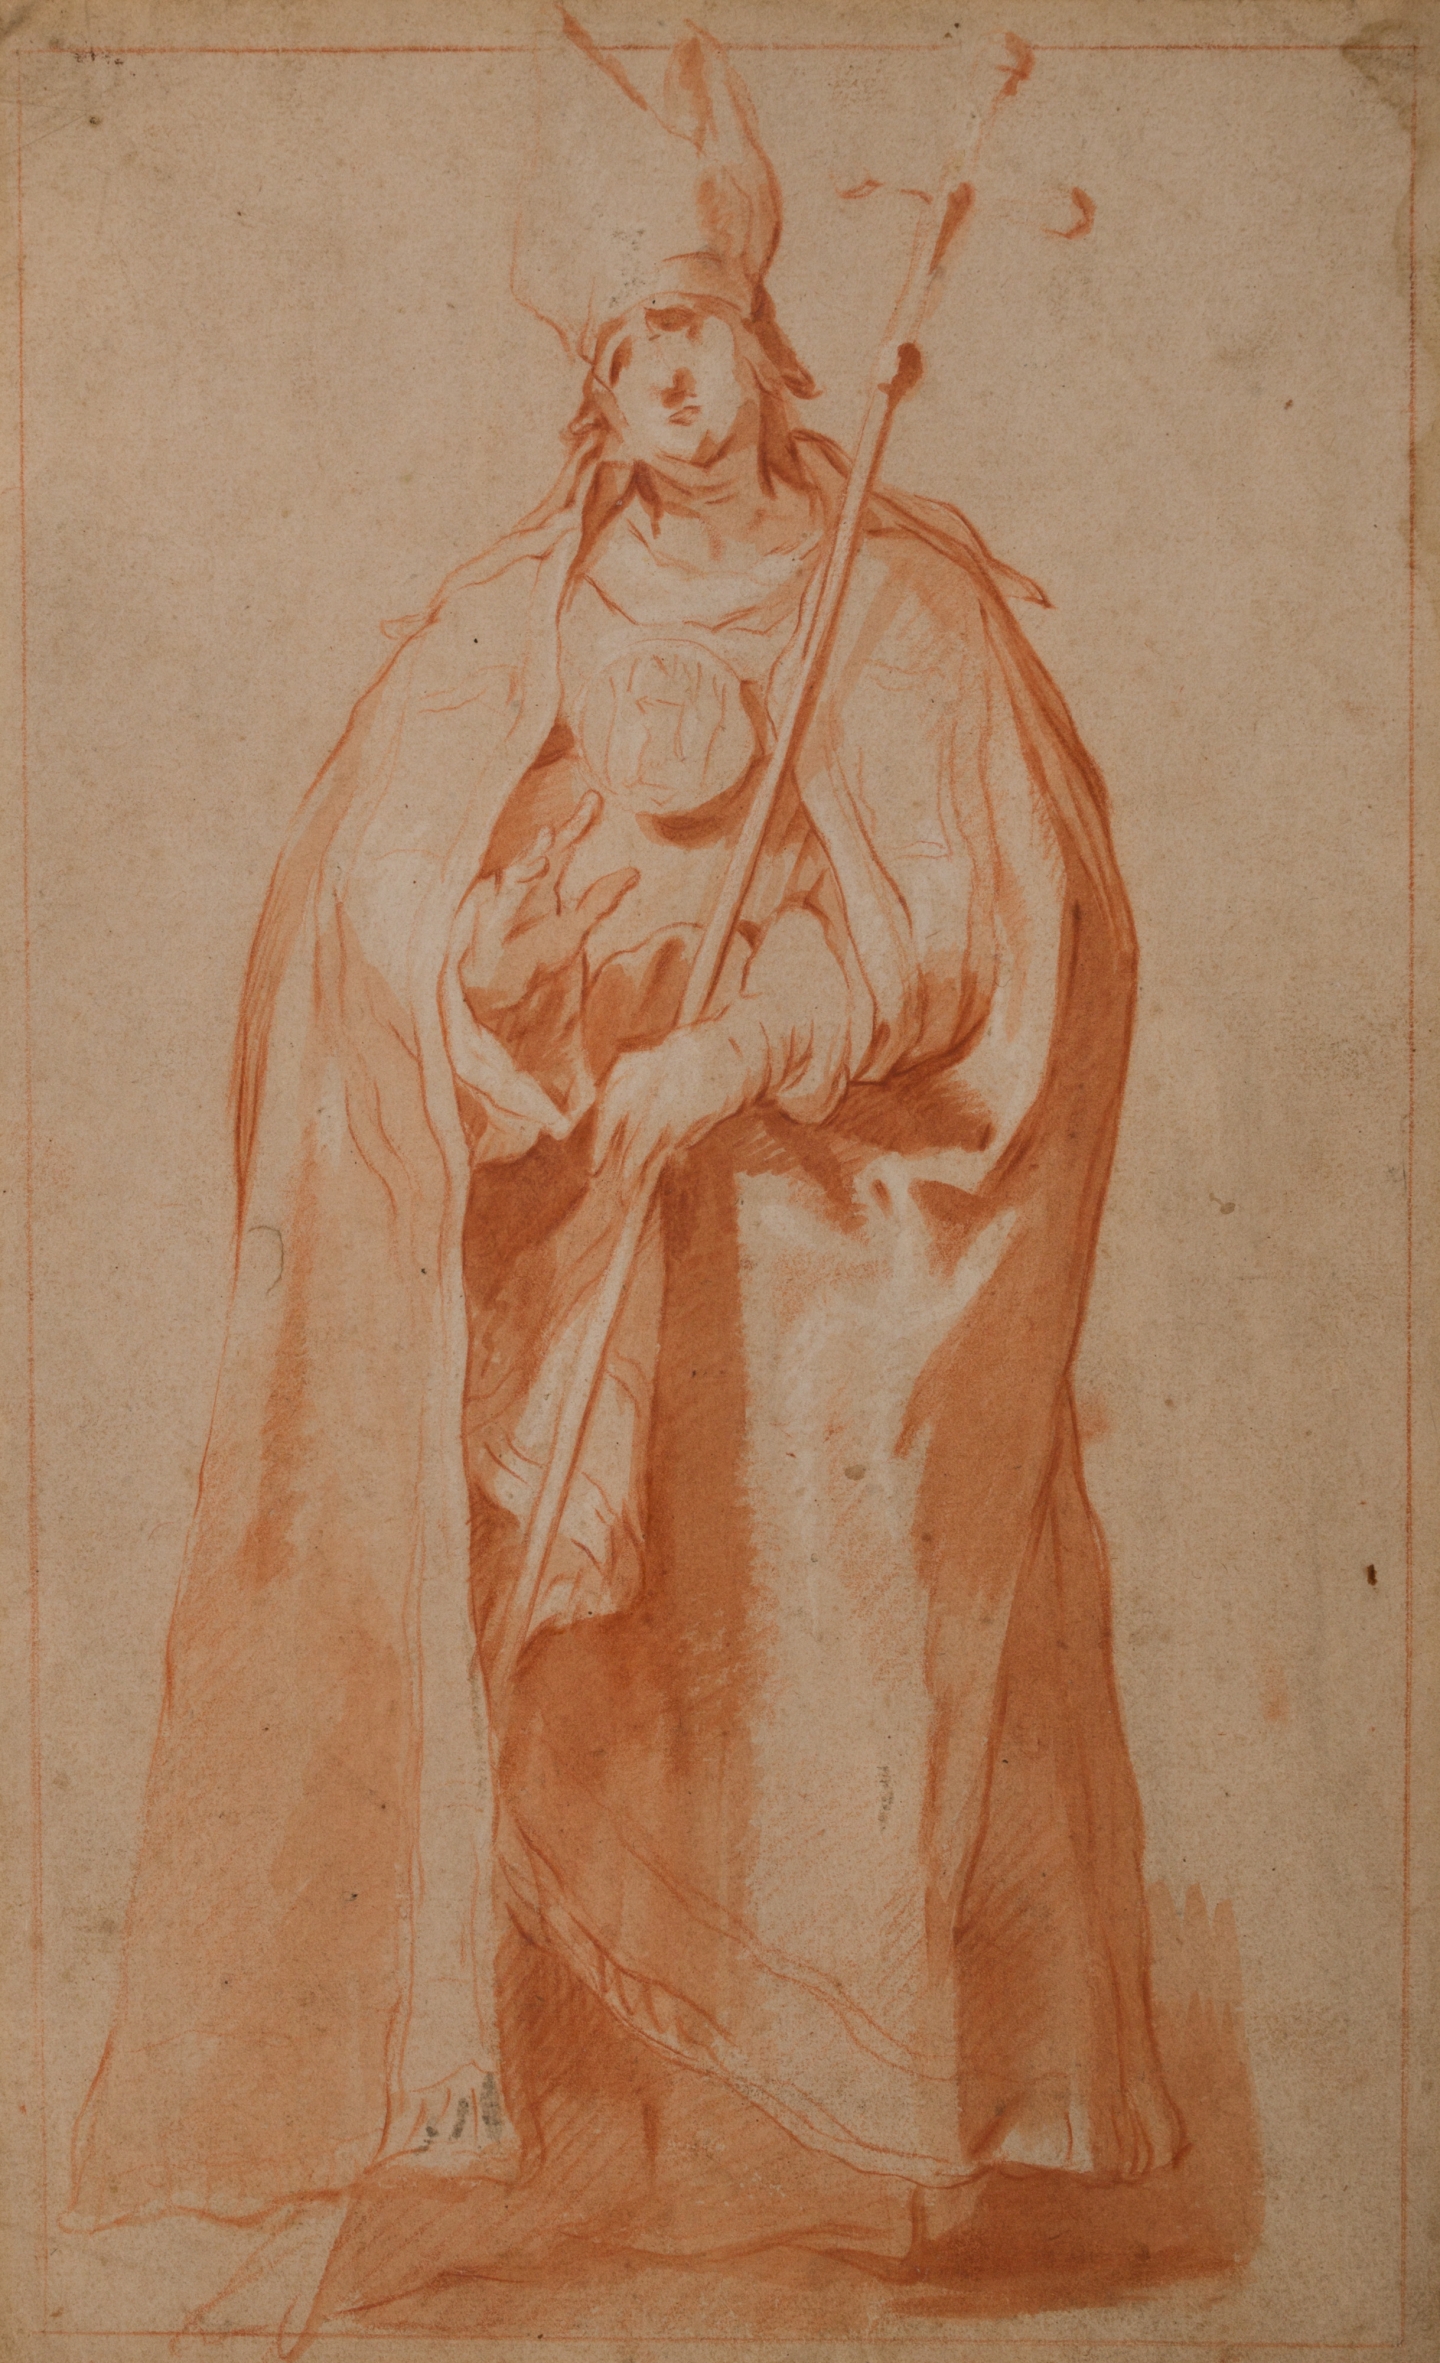 Abraham Bloemaert (Gorinchem, 1564-Utrecht, 1651) Study of a standing bishop